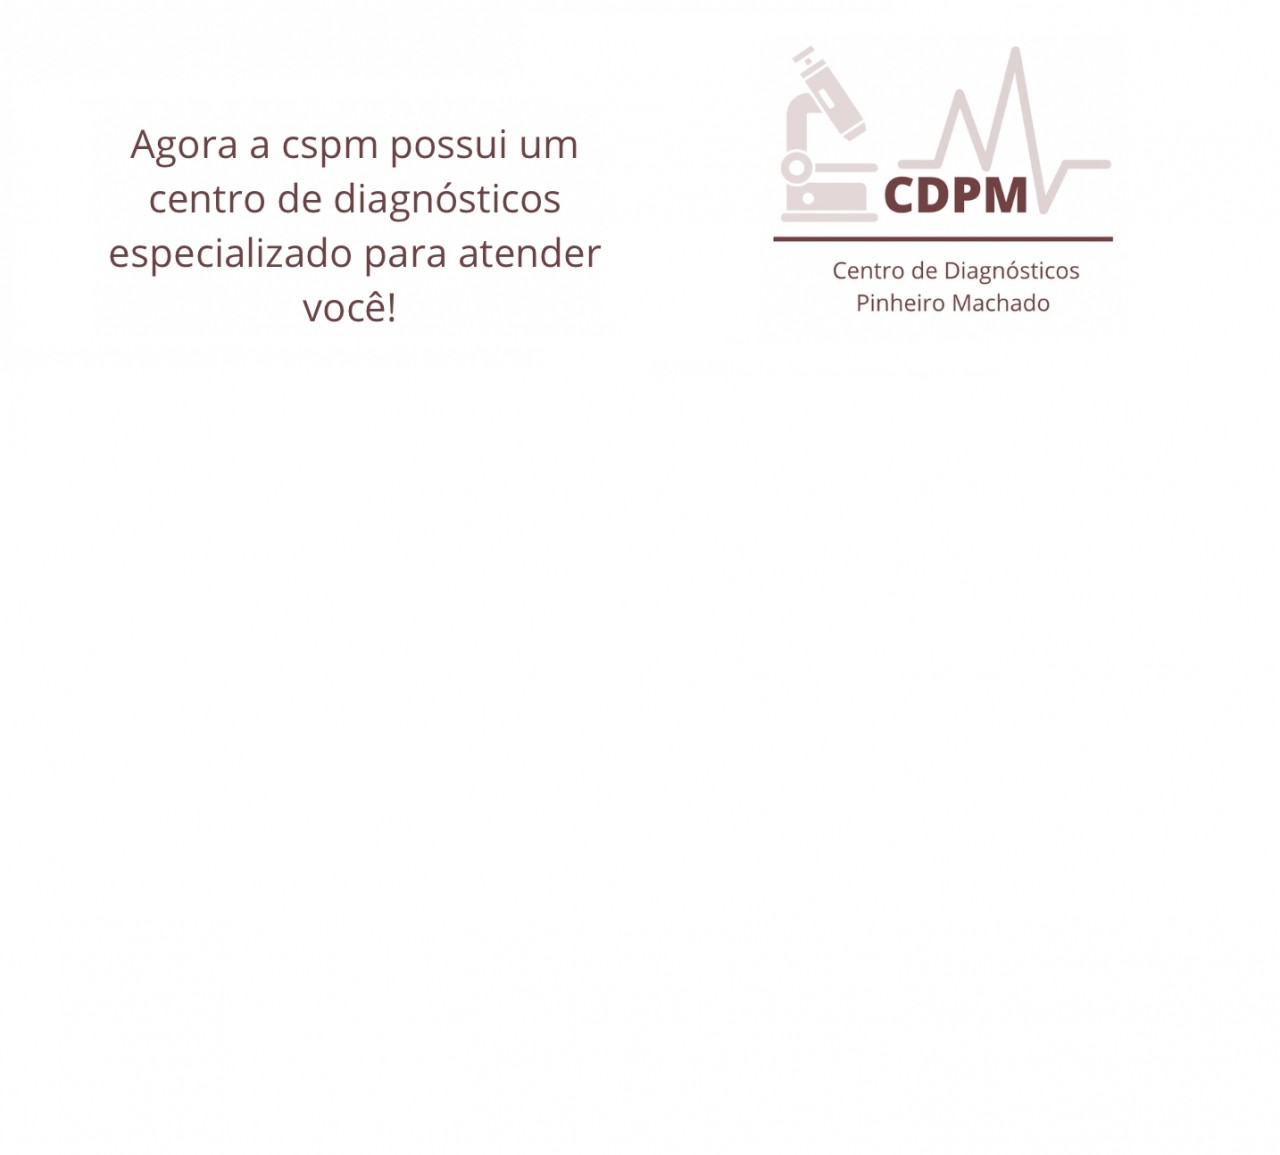 Conheça o CDPM - Centro de Diagnósticos Pinheiro Machado